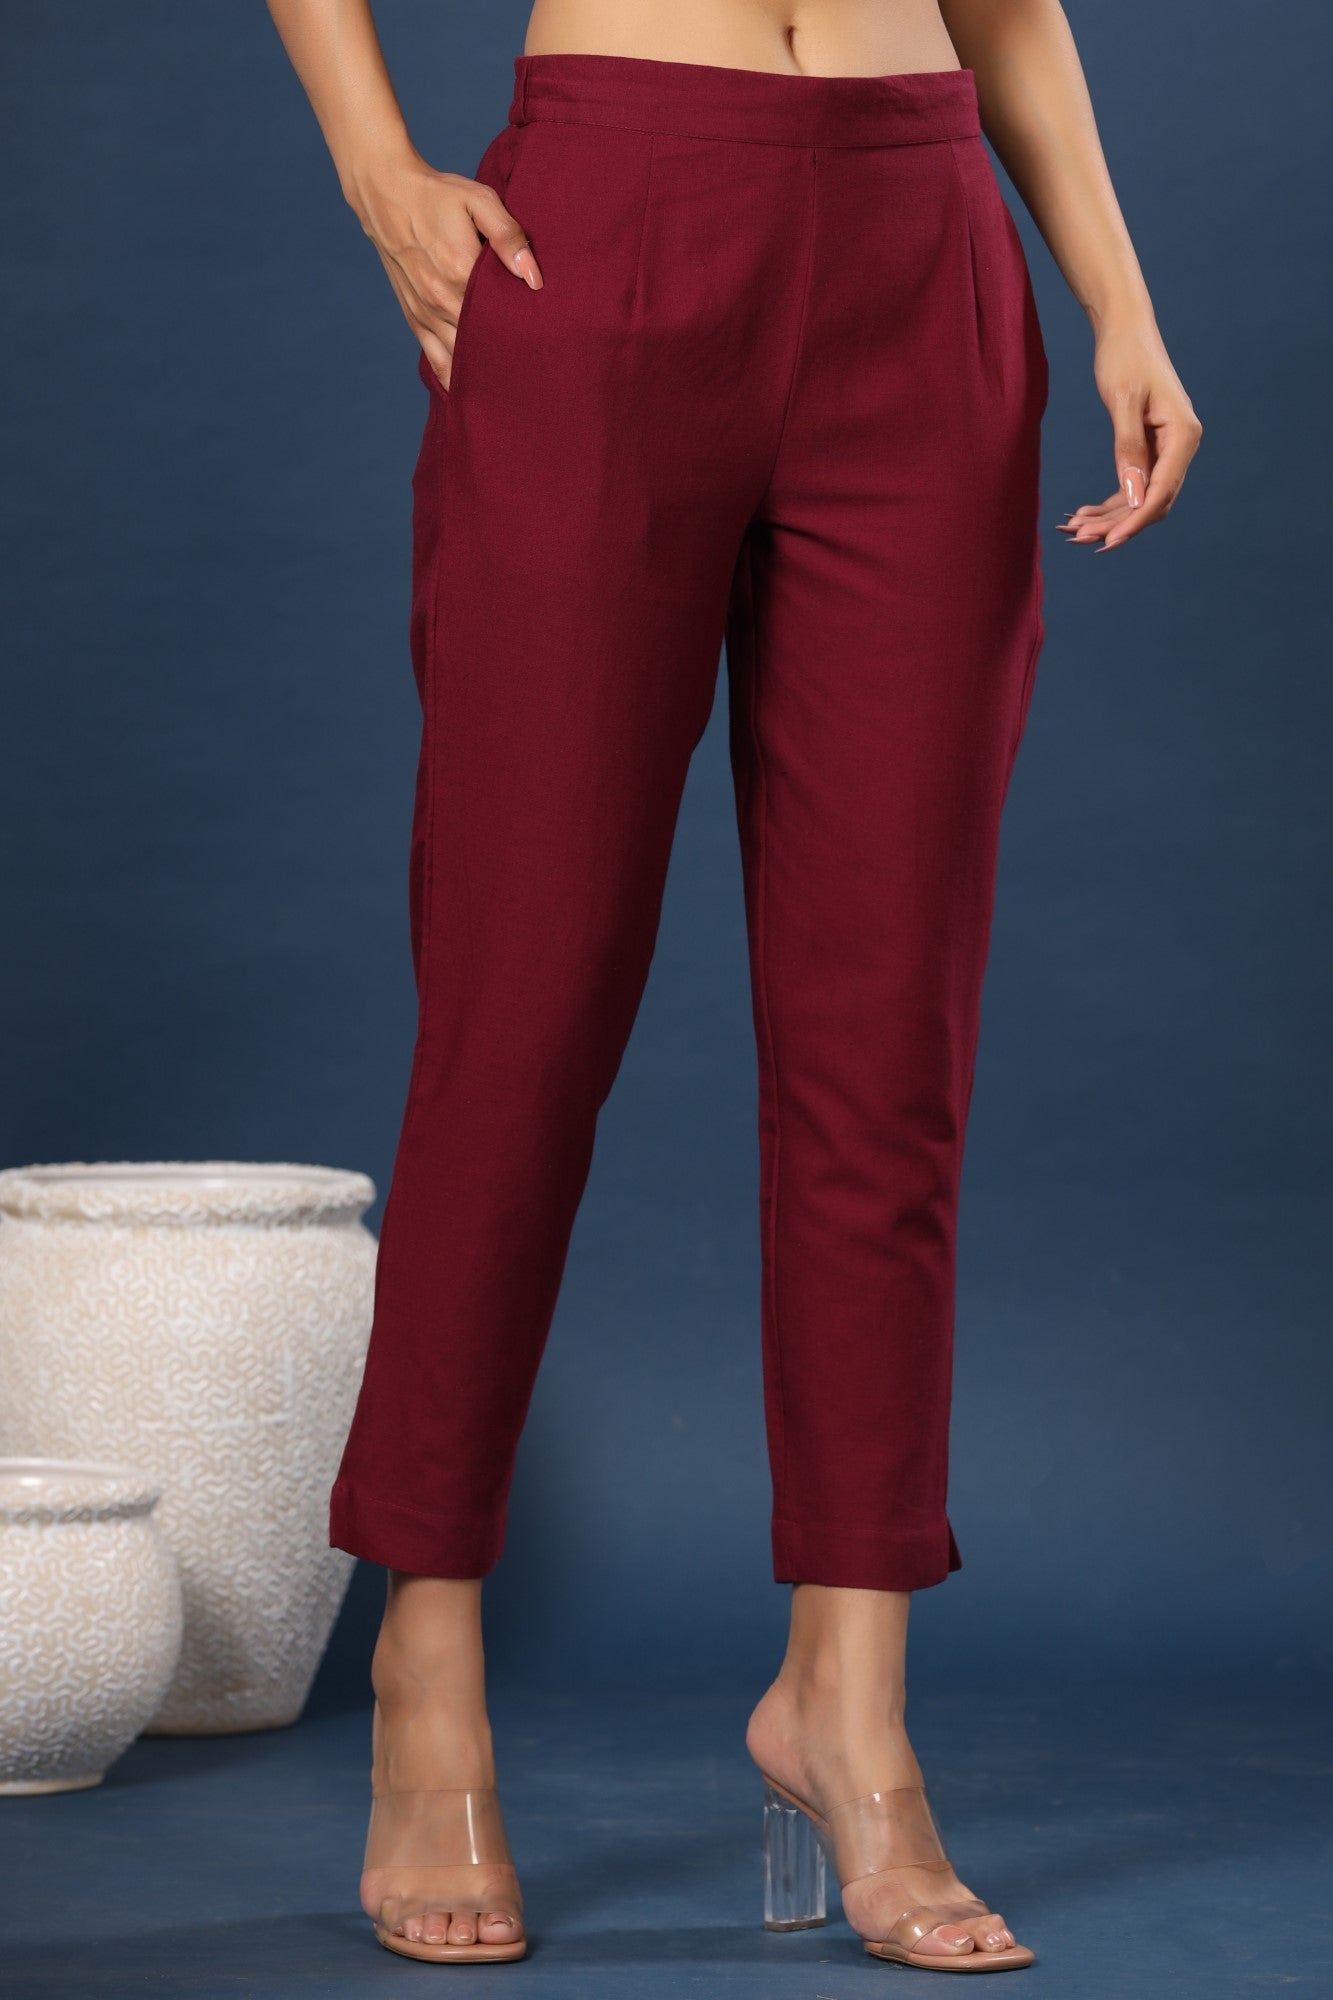 Burgundy Cotton Flex Solid Slim Fit Pant/Slim Pant